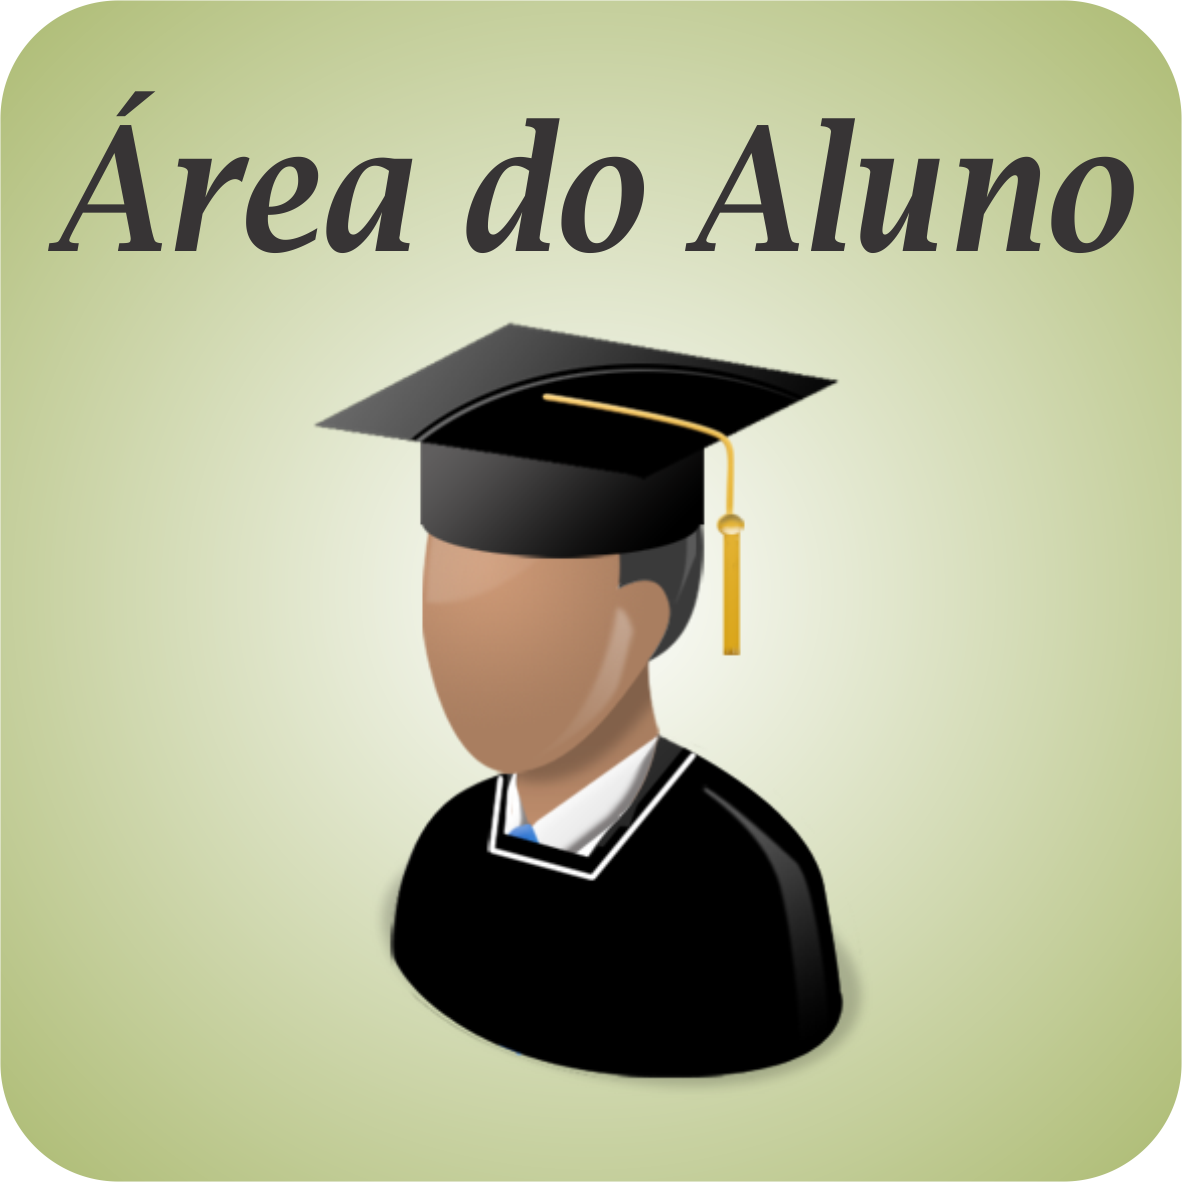 area-do-aluno